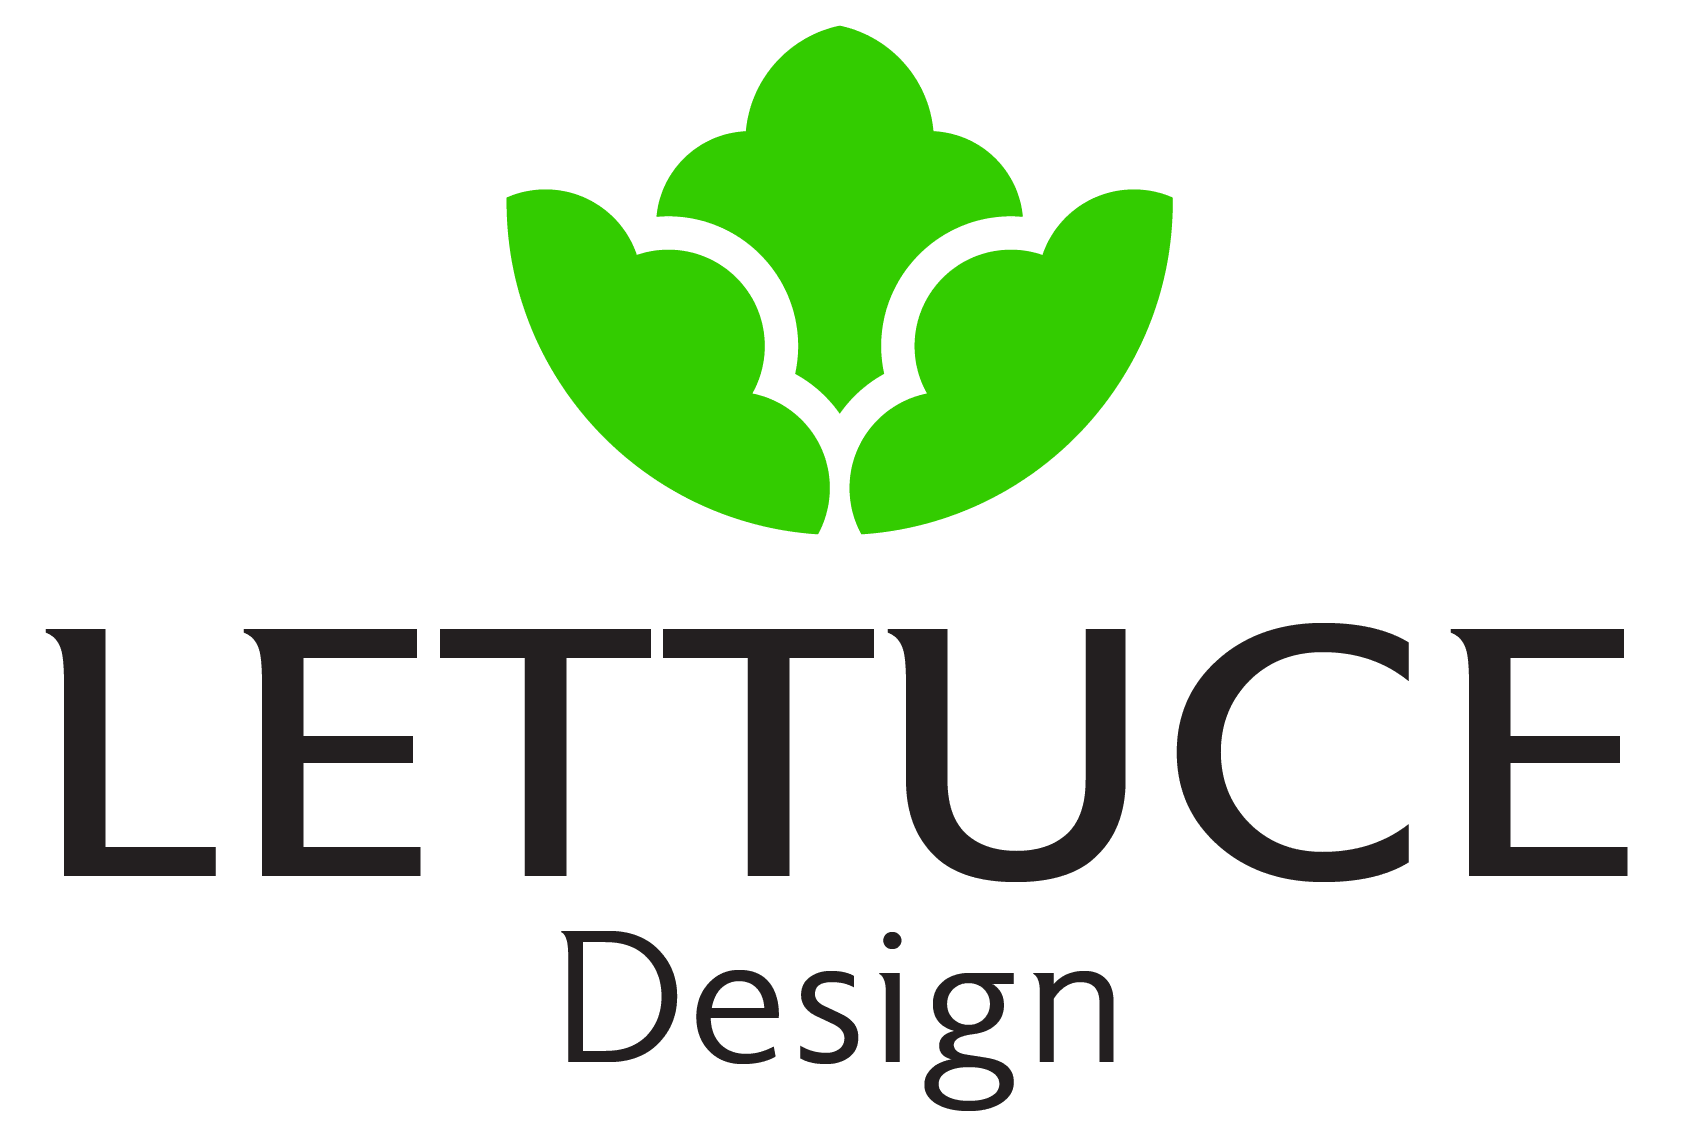 Lettuce Designs - Creative Design Studio